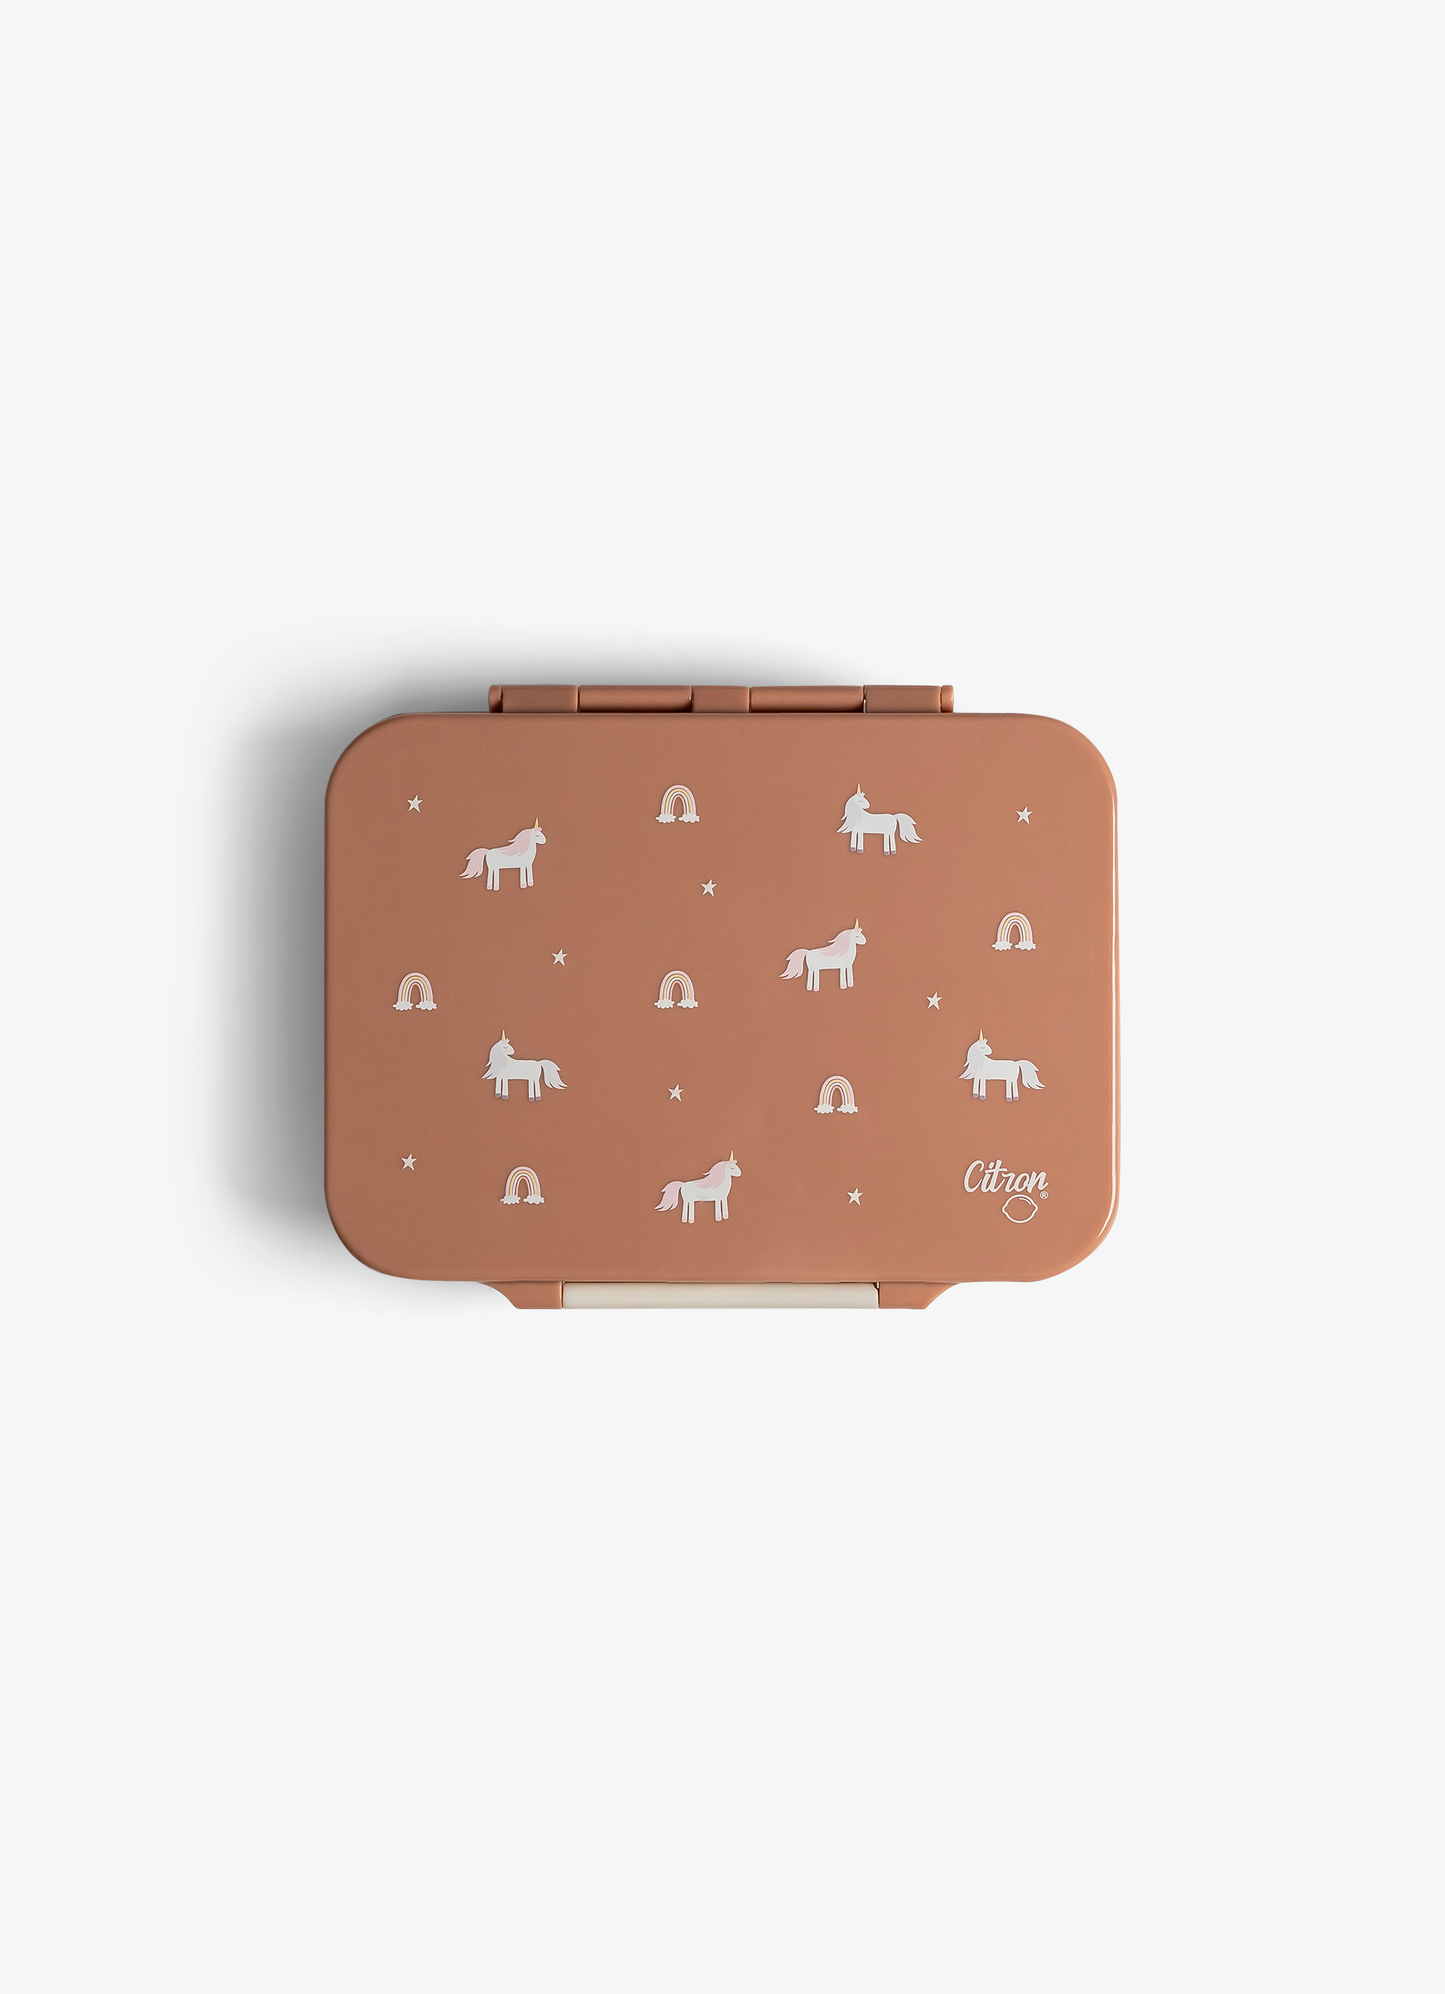 صندوق غداء تريتان زهري من 4 أقسام - وحيد القرن